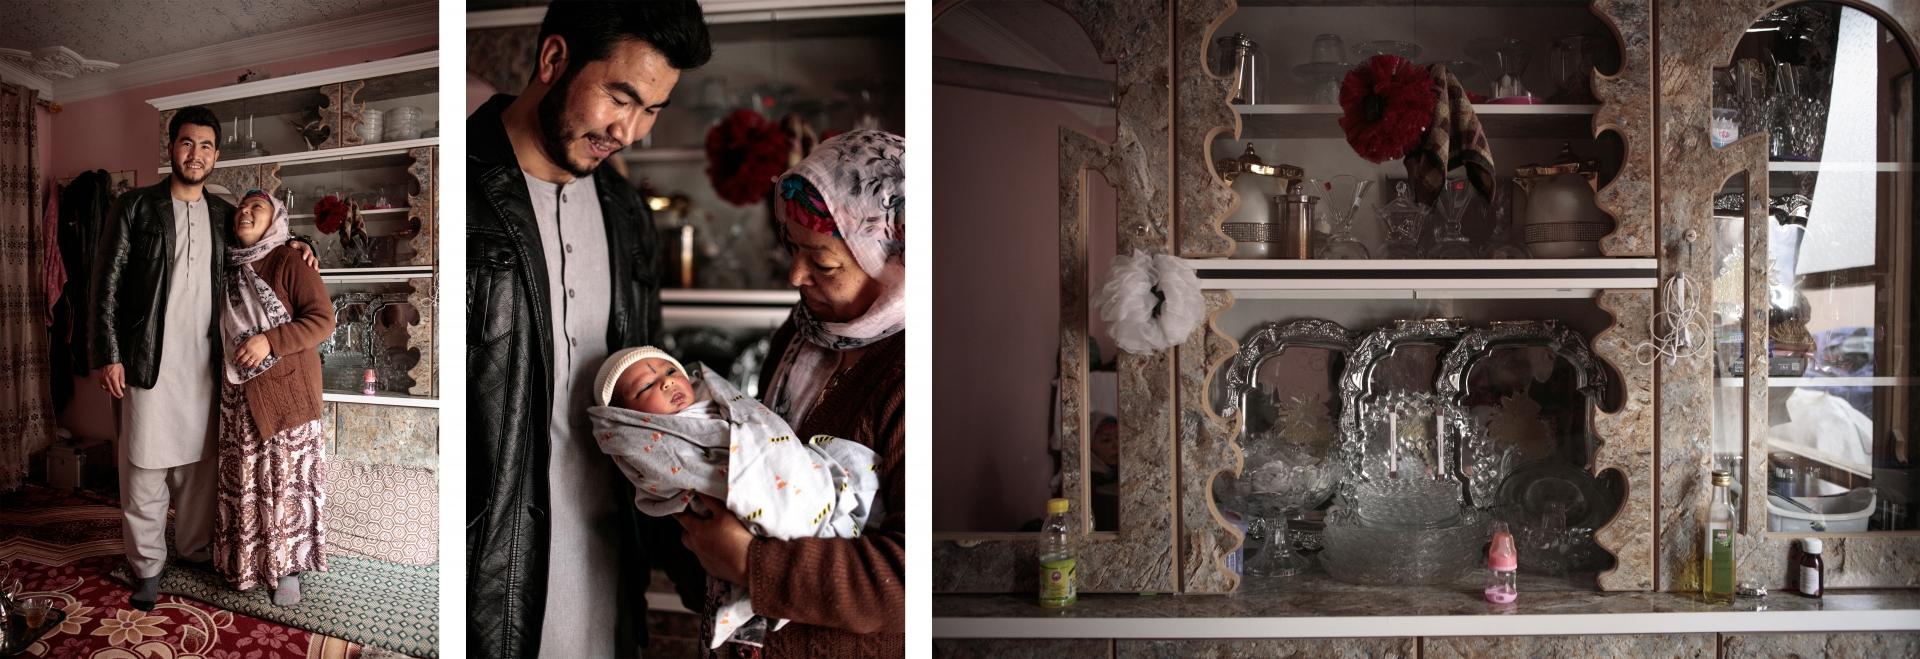 Marzia et Mohamad Jawad se sont mariés l’année dernière, ils sont cousins. Les noces ont été célébrées dans un wedding hall, un salon de mariage. Il y avait 1 500 invités, c’est la moyenne en Afghanistan. Dans la vitrine du meuble de leur chambre, la vaisselle et les divers cadeaux de mariage trônent. 